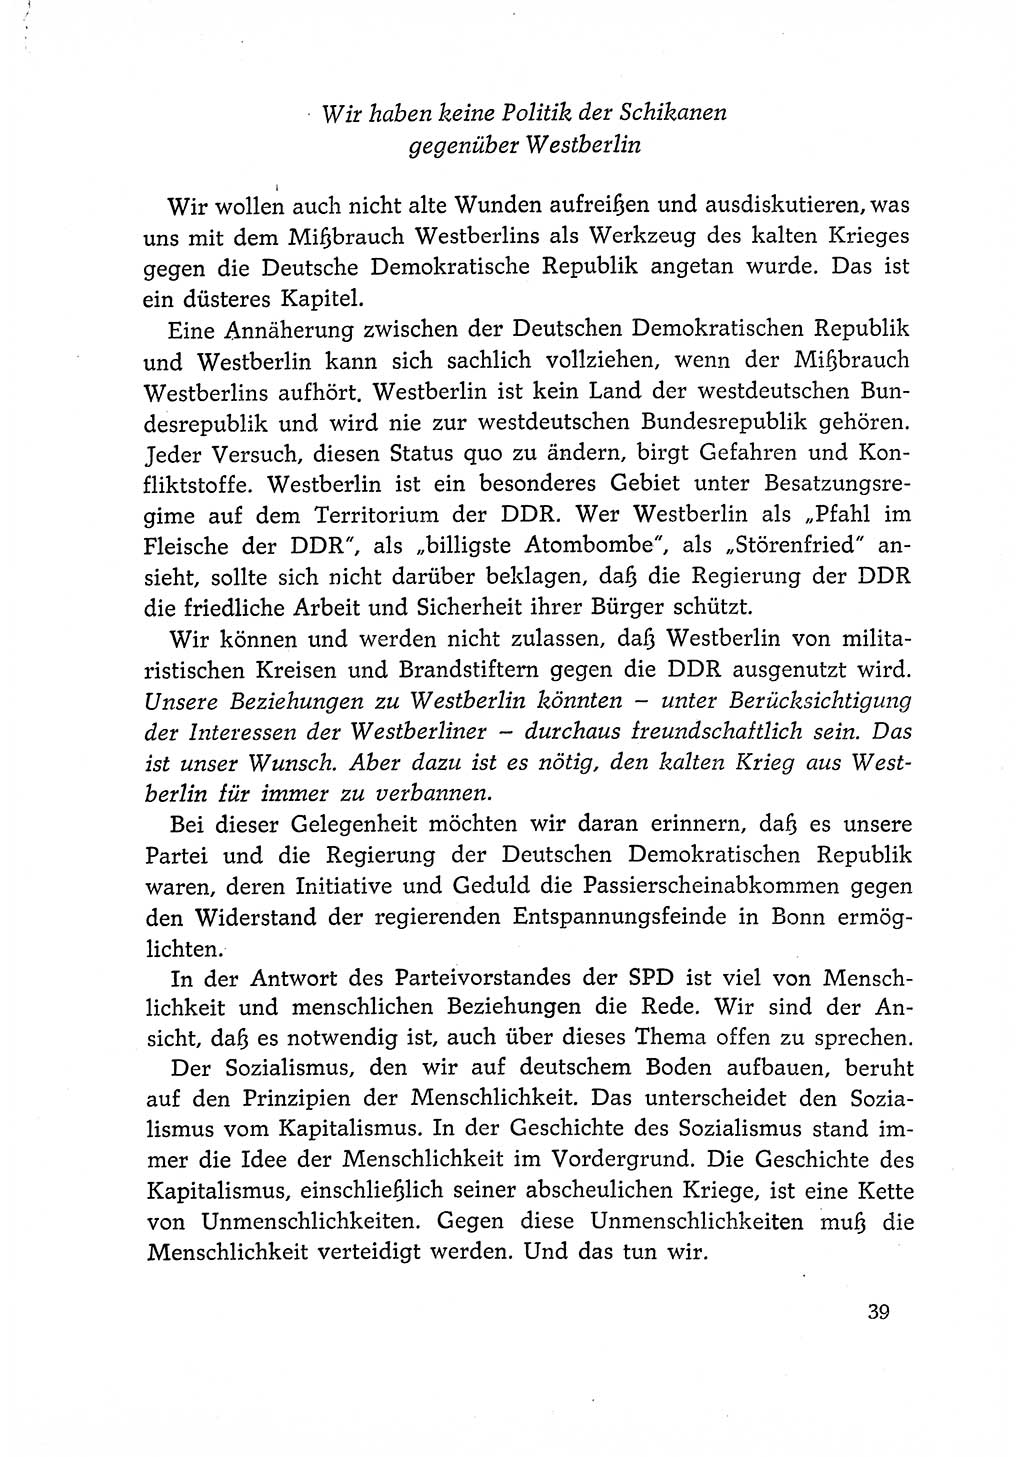 Dokumente der Sozialistischen Einheitspartei Deutschlands (SED) [Deutsche Demokratische Republik (DDR)] 1966-1967, Seite 39 (Dok. SED DDR 1966-1967, S. 39)